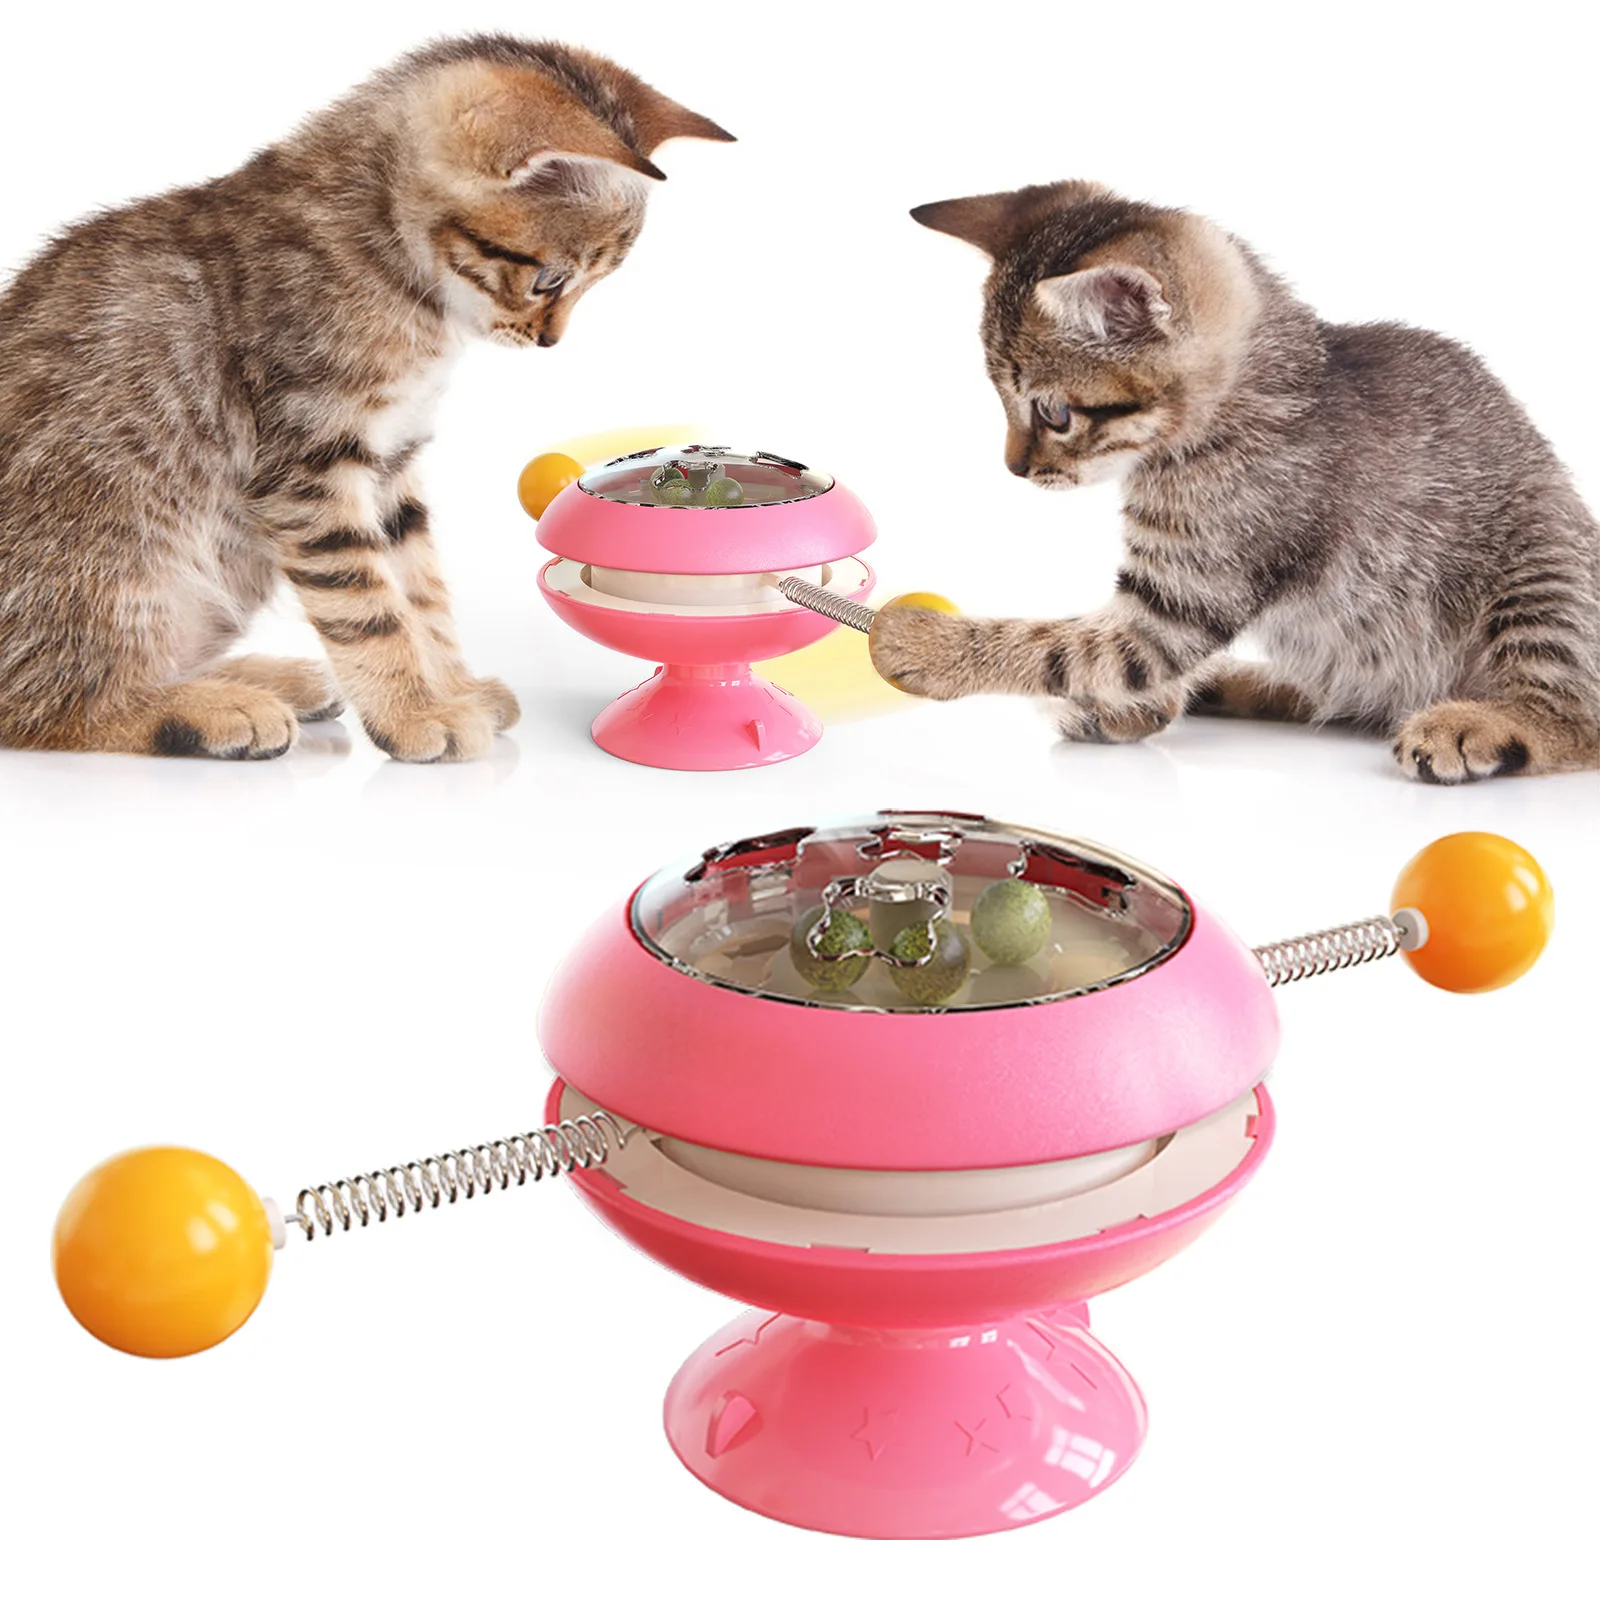 Nowy Żyroskop Śmieszne Kot Piłkę Molowa Ukąszenie Wytrzymała Zabawka Kot kocimiętka Interaktywne Puzzle Dokuczanie Kot Kij Kot Dostarcza Zabawki dla zwierząt domowych